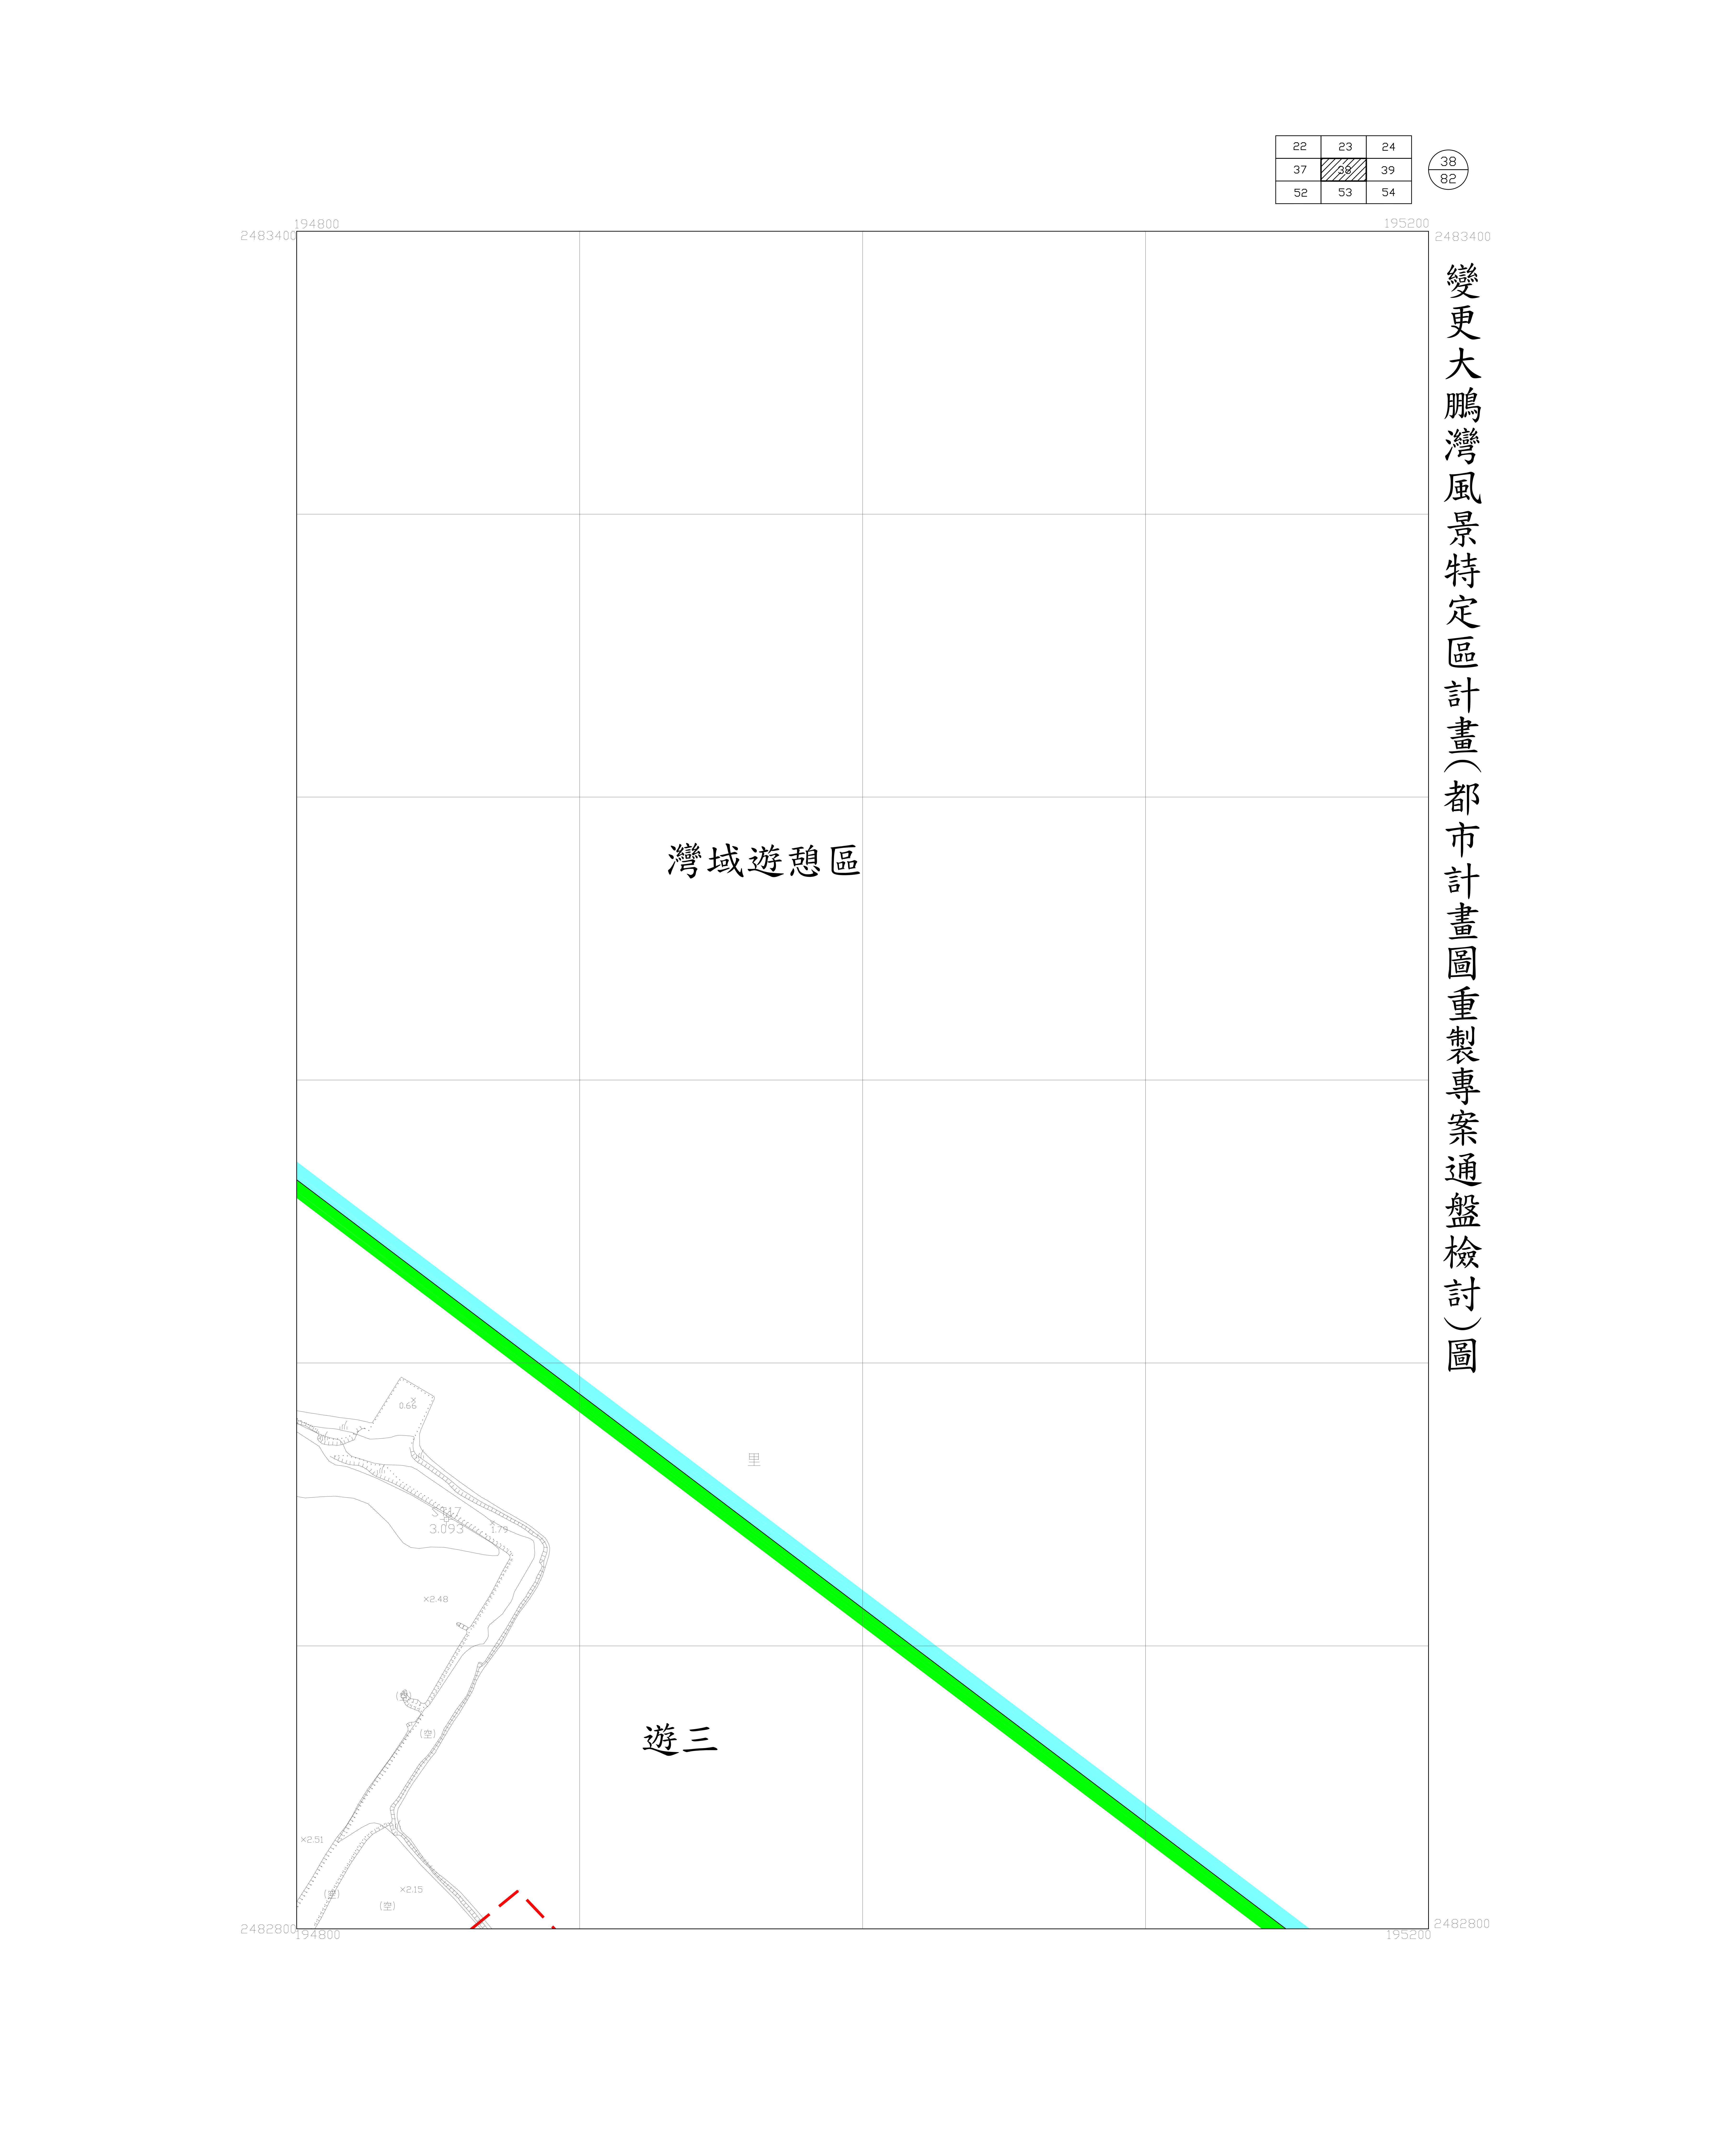 大鵬灣-都市計畫圖重製專案通盤檢討圖(核定)38-1